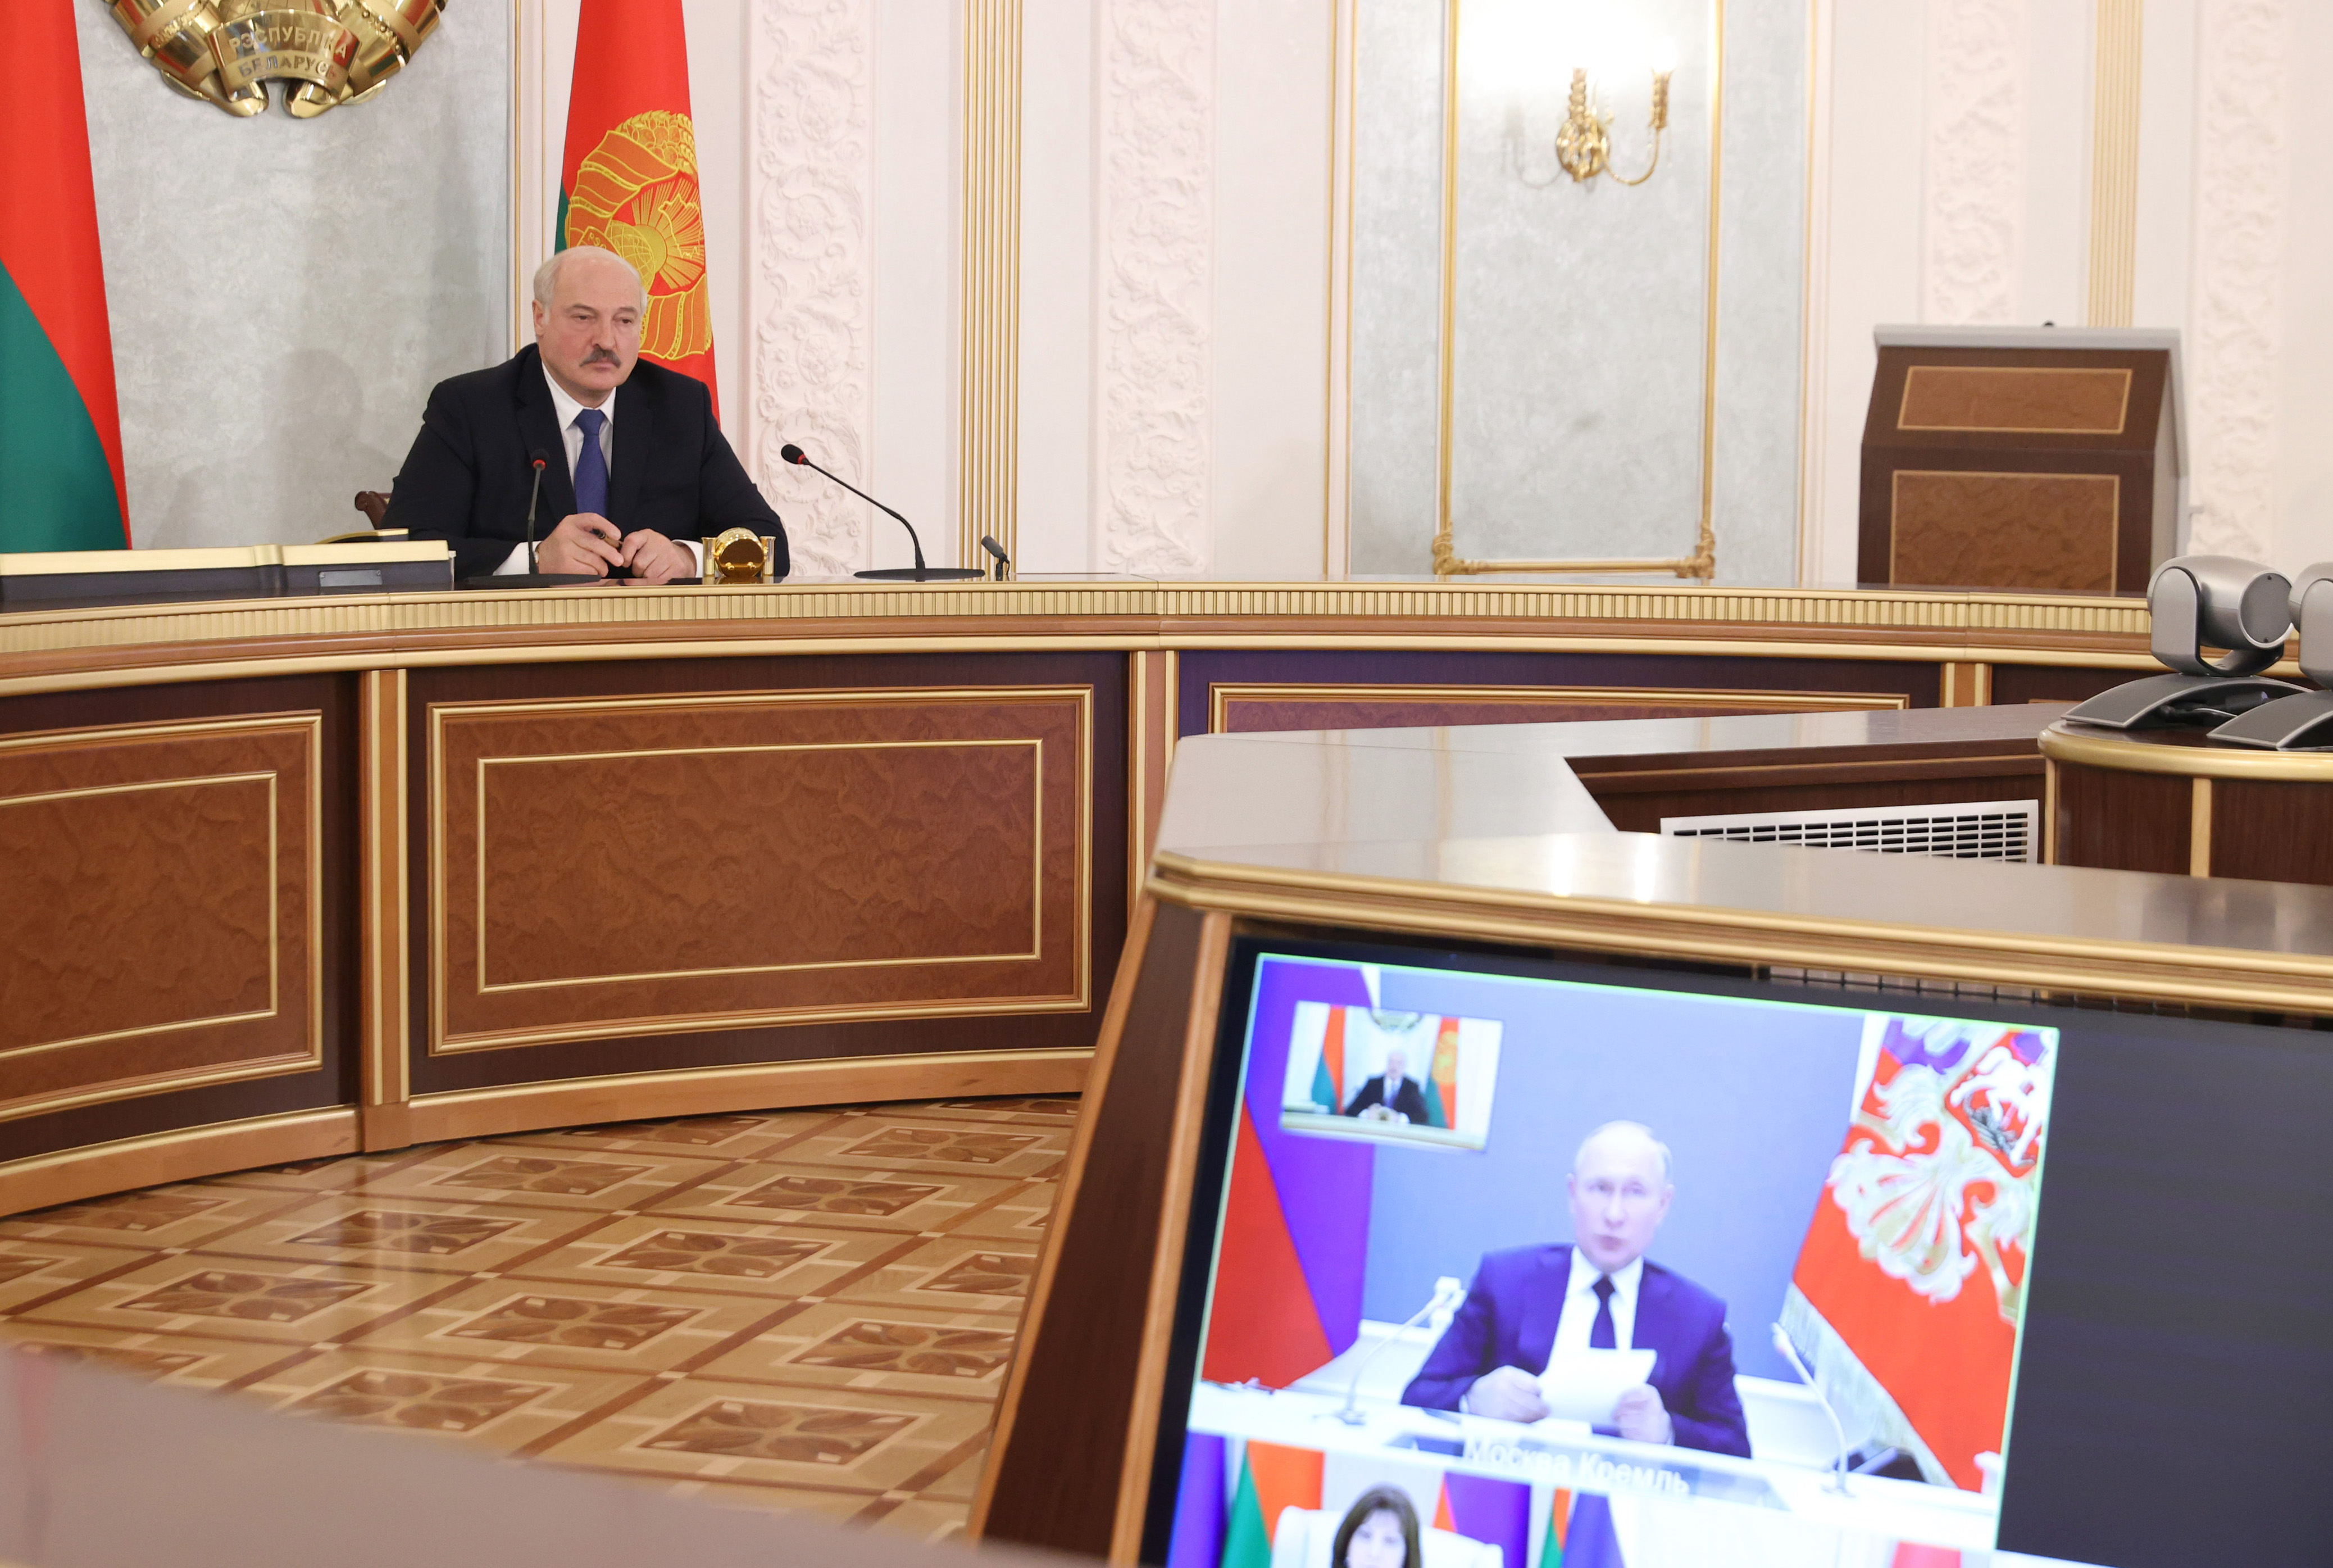  Лукашенко: Нужно вырабатывать у людей иммунитет к фейковой информации